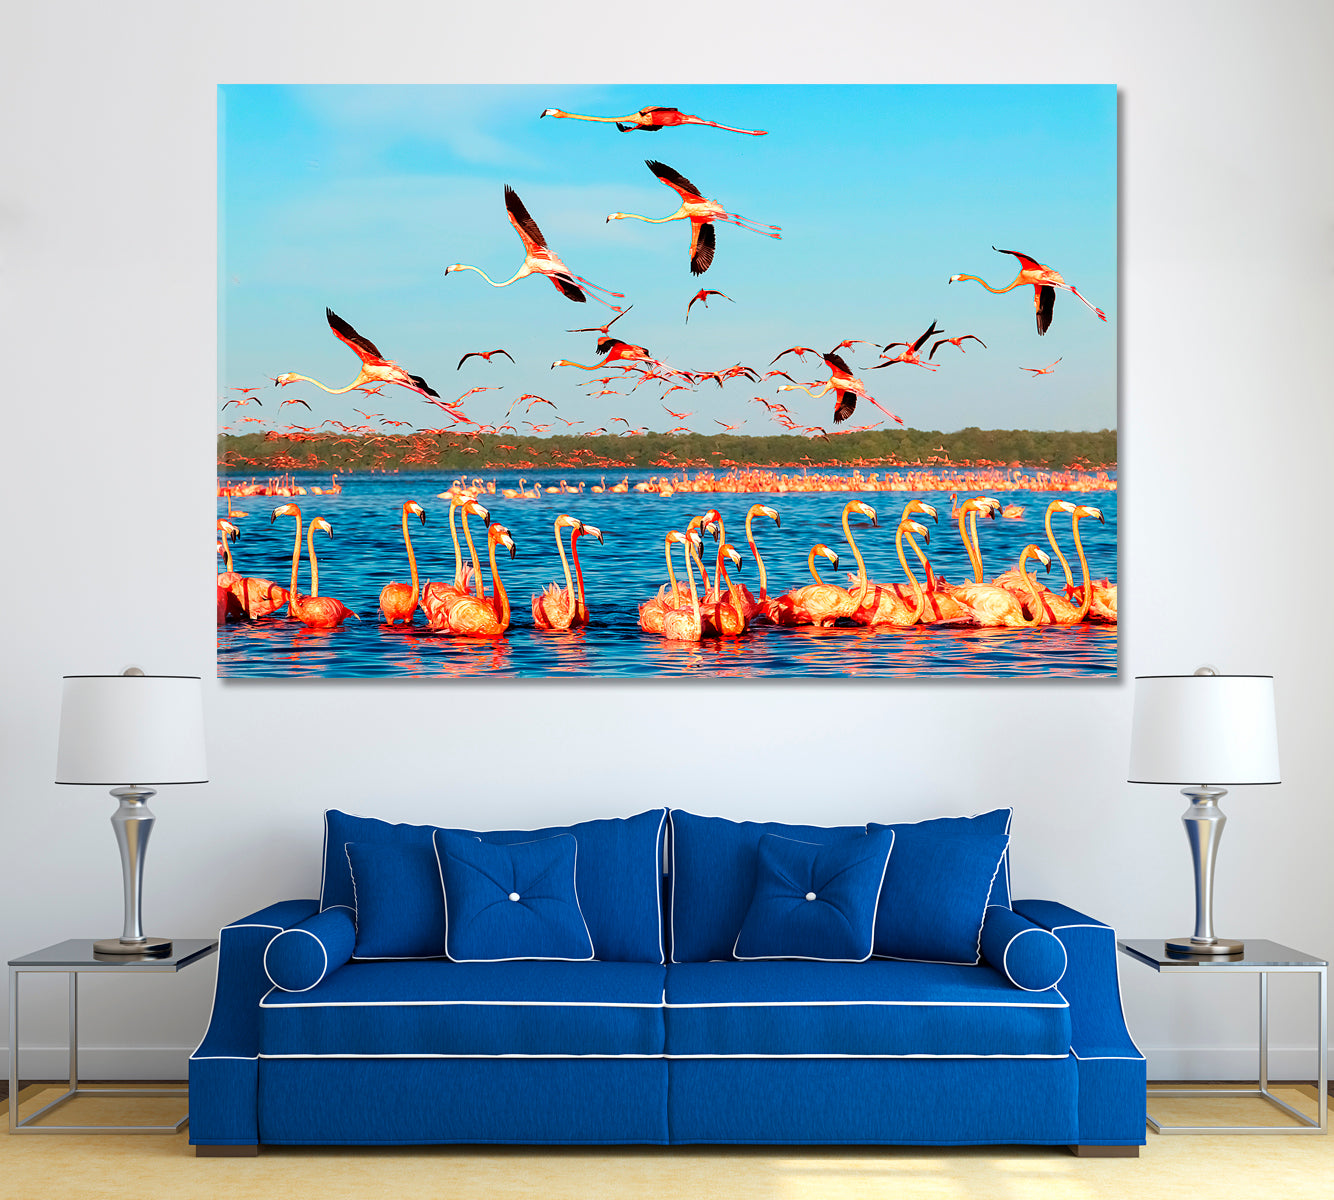 Flamingos in Celestun National Park Mexico Canvas Print ArtLexy 1 Panel 24"x16" inches 